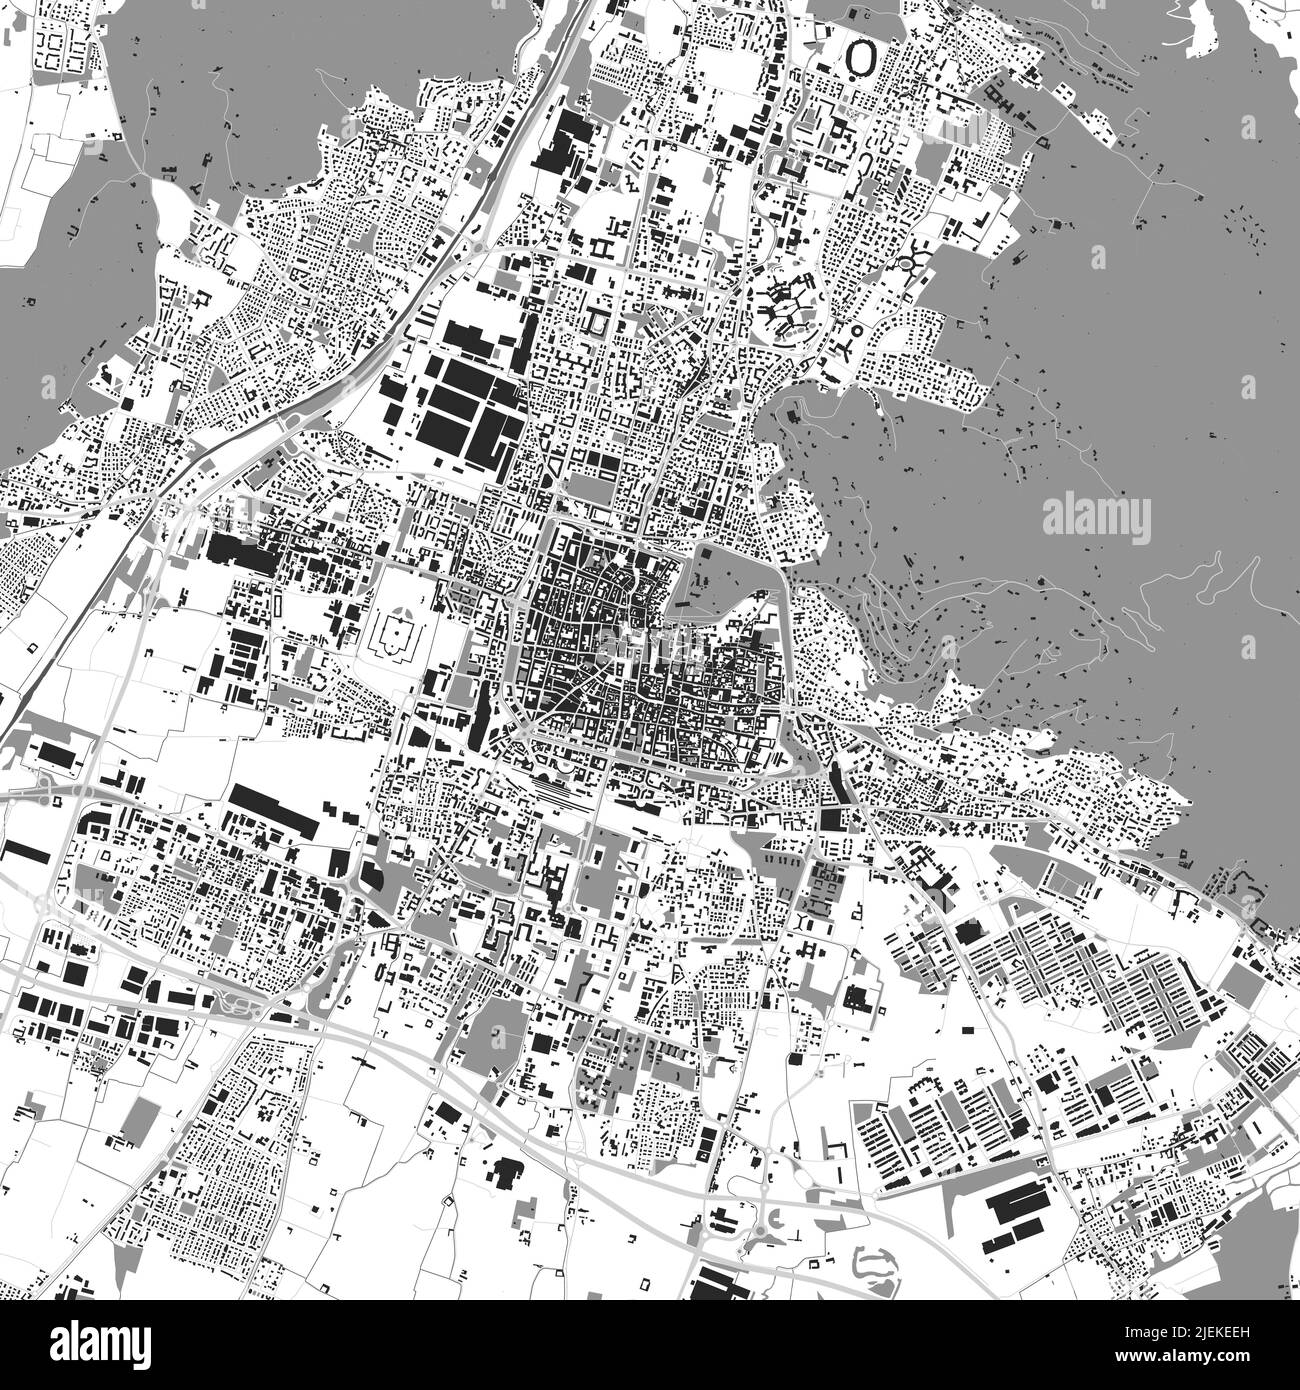 Carte vectorielle de la ville urbaine de Brescia. Illustration vectorielle, Brescia carte échelle de gris poster d'art noir et blanc. Image de carte de rue avec routes, cit métropolitain Illustration de Vecteur